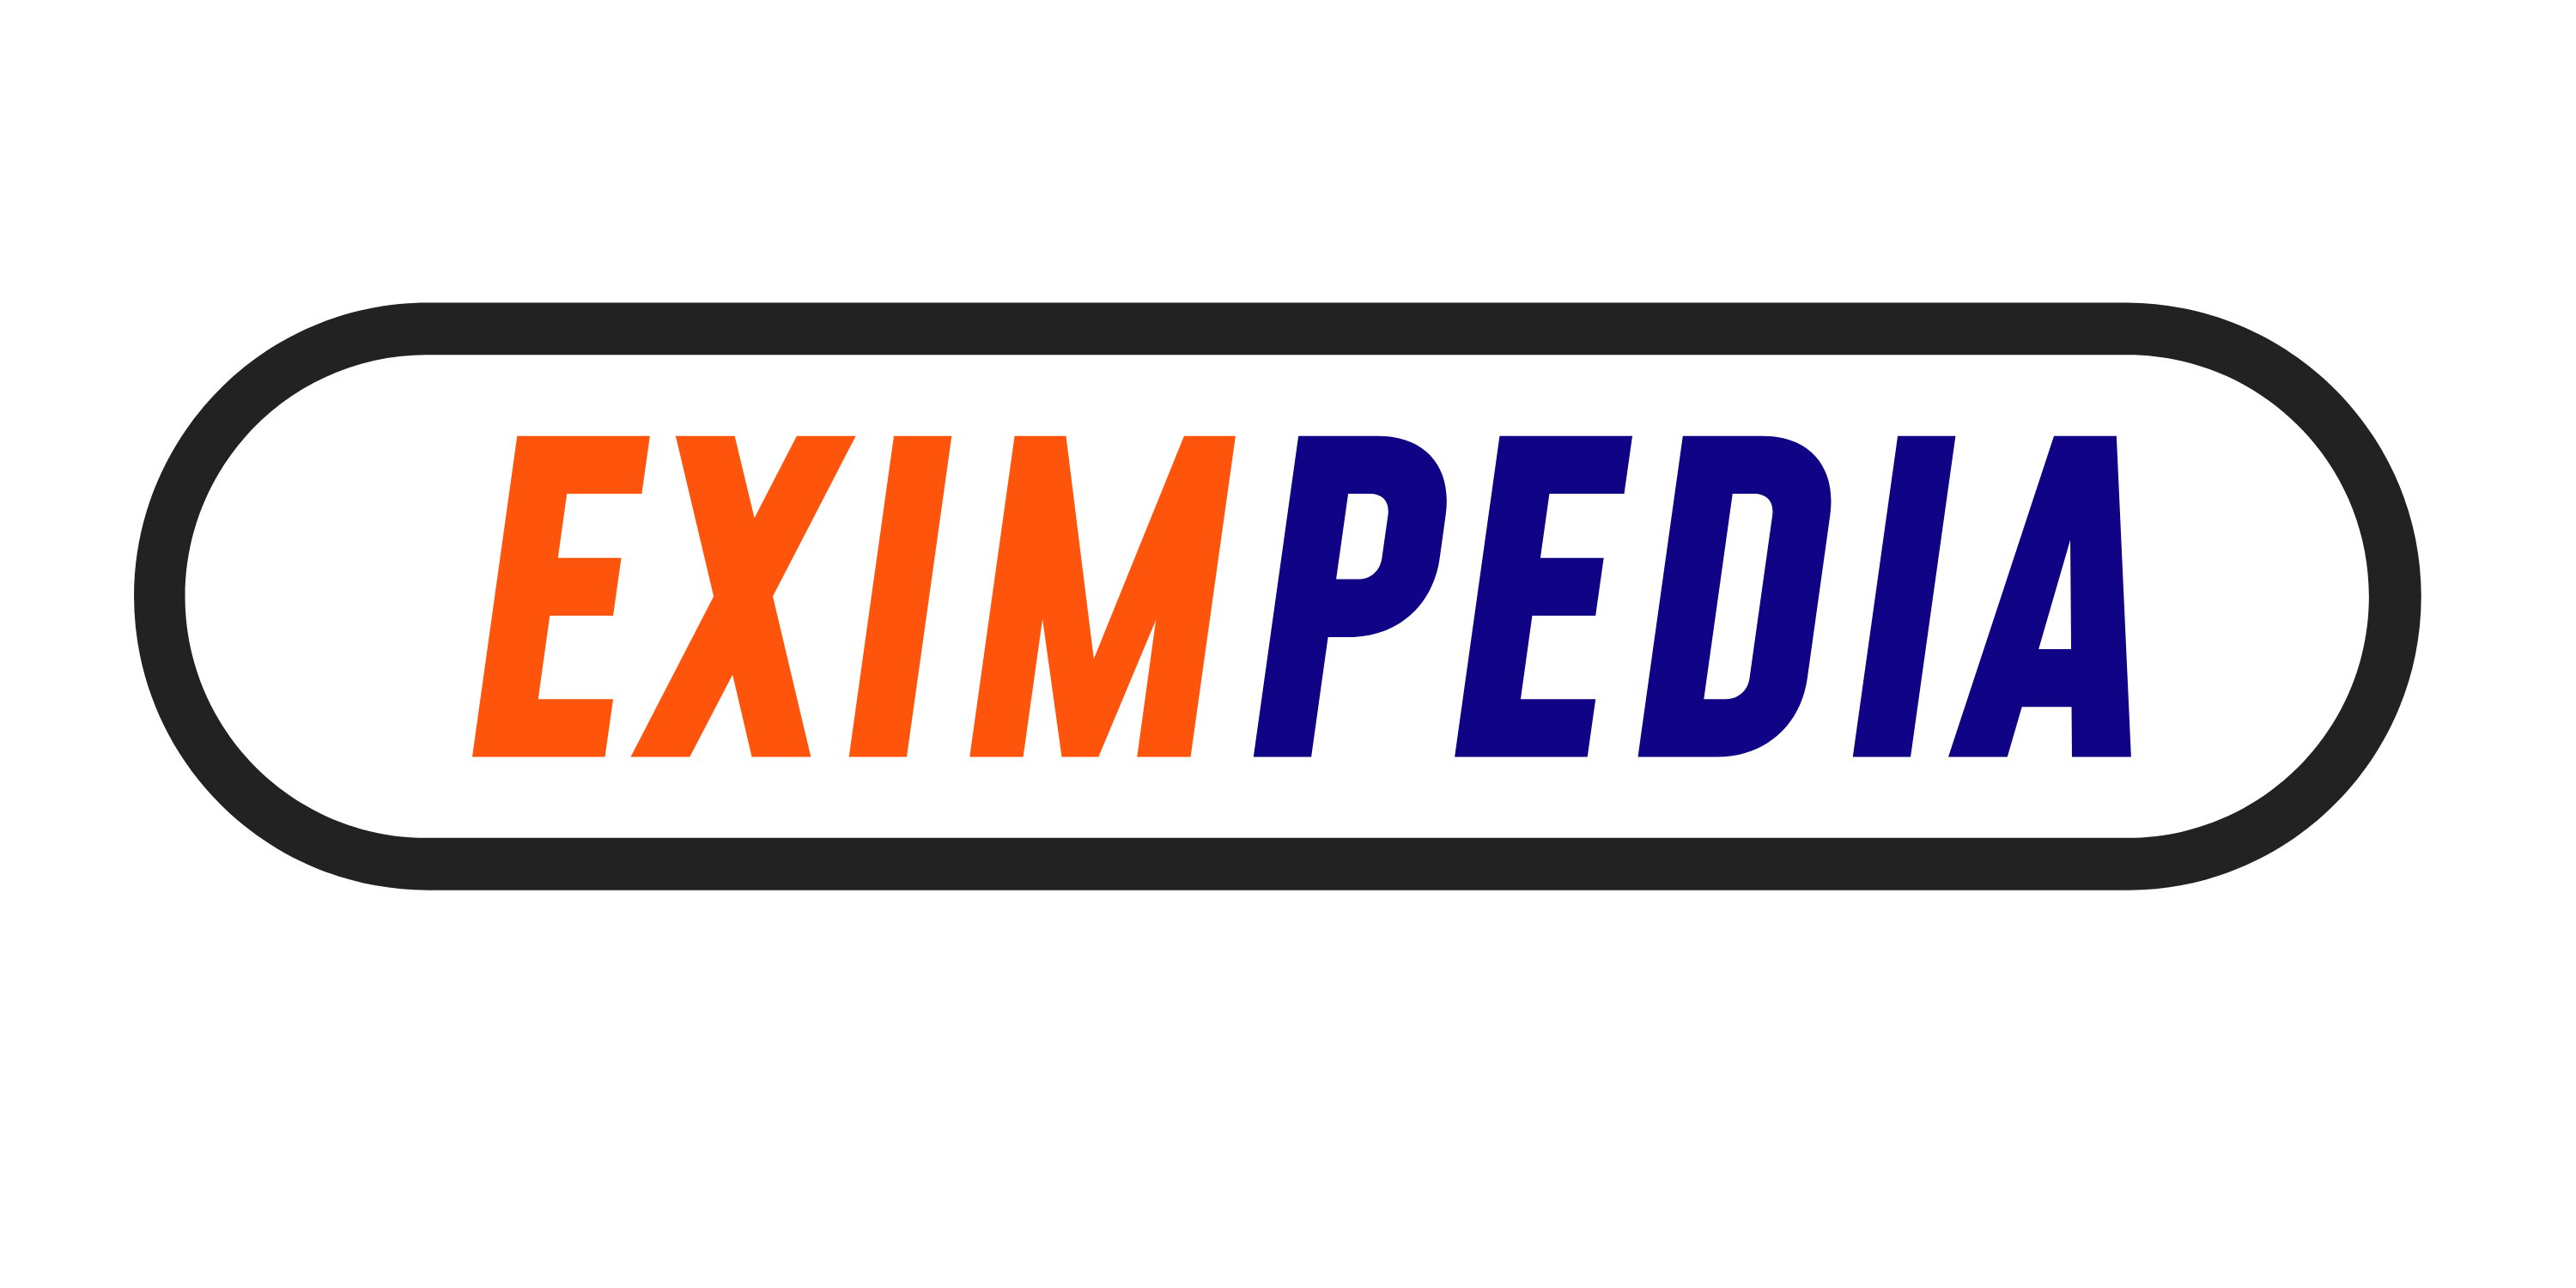 eximpedia.com | Import, Export & Foreign-trade educational website